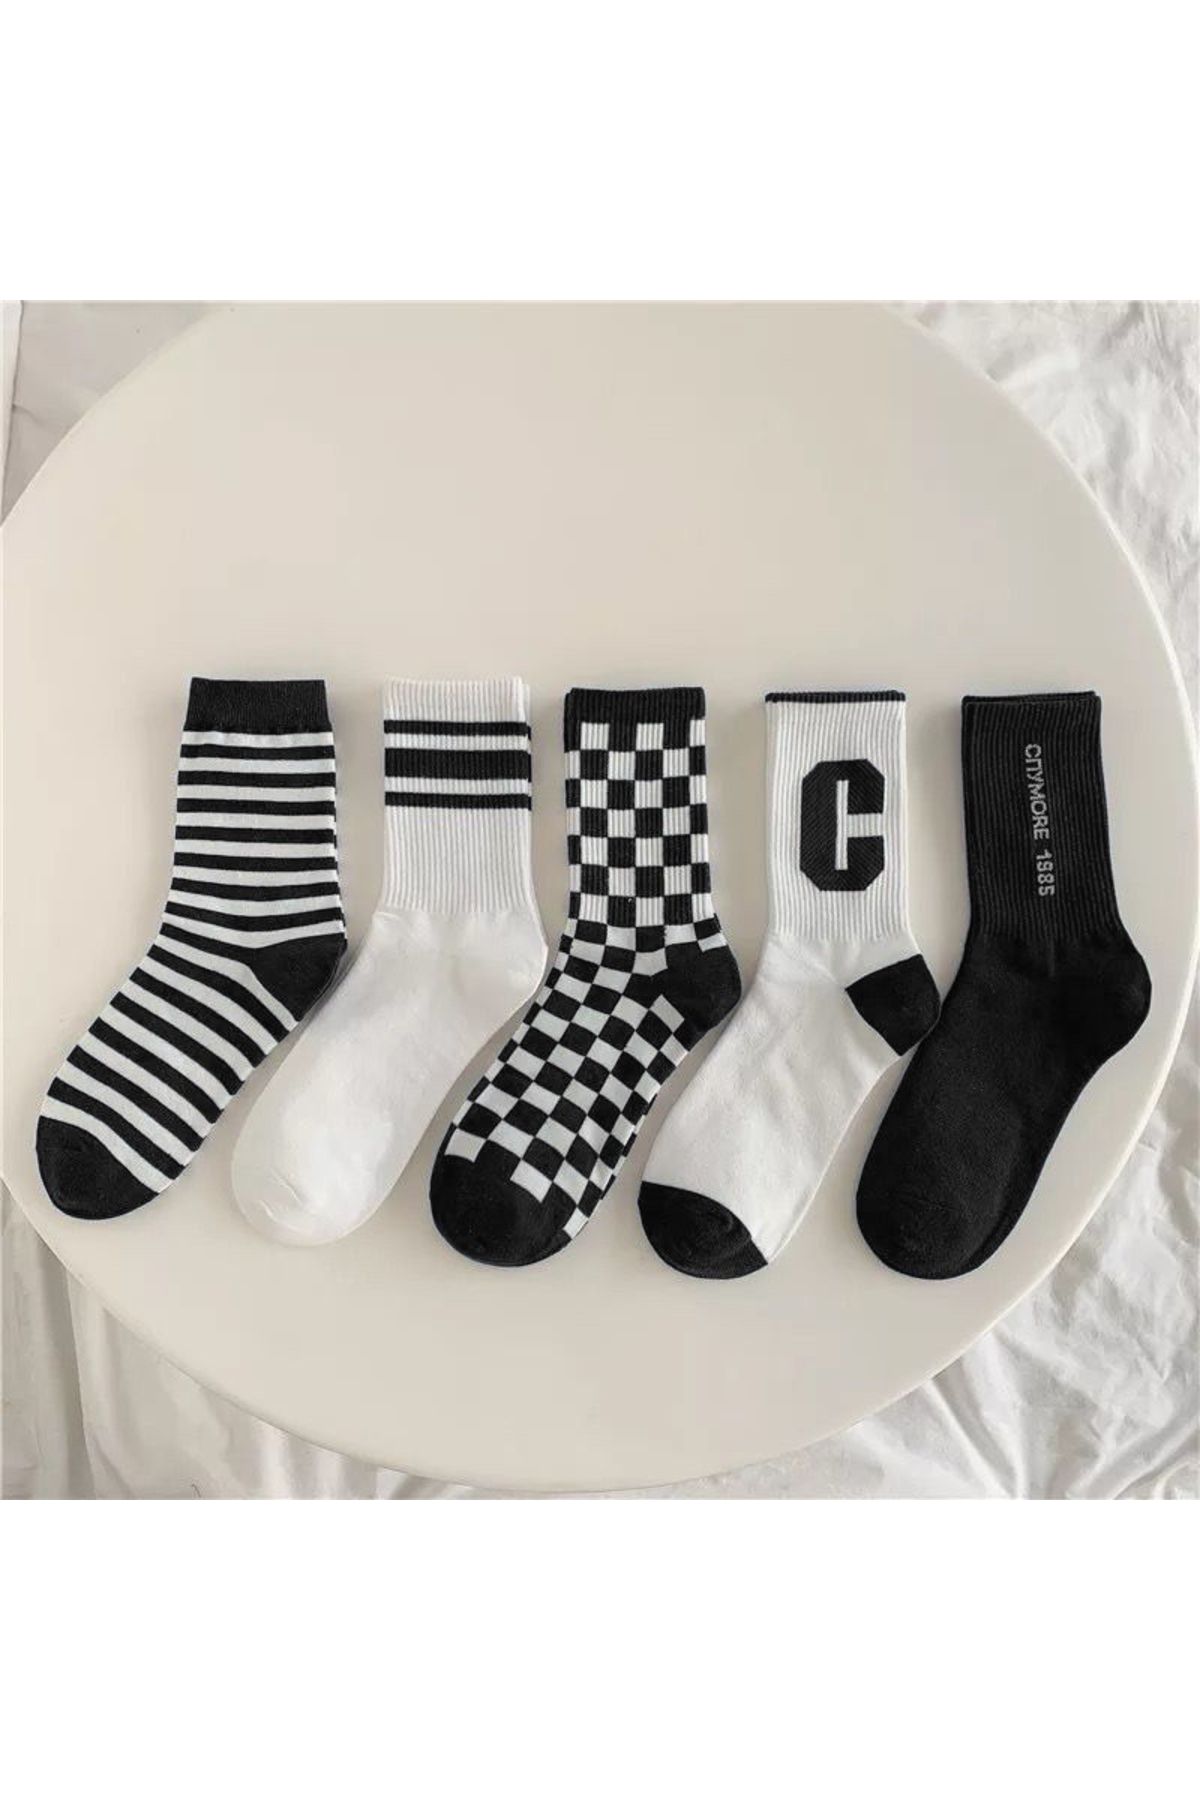 Çorap Kurdu 5’li Karışık Desenli Tenis Çorap Set